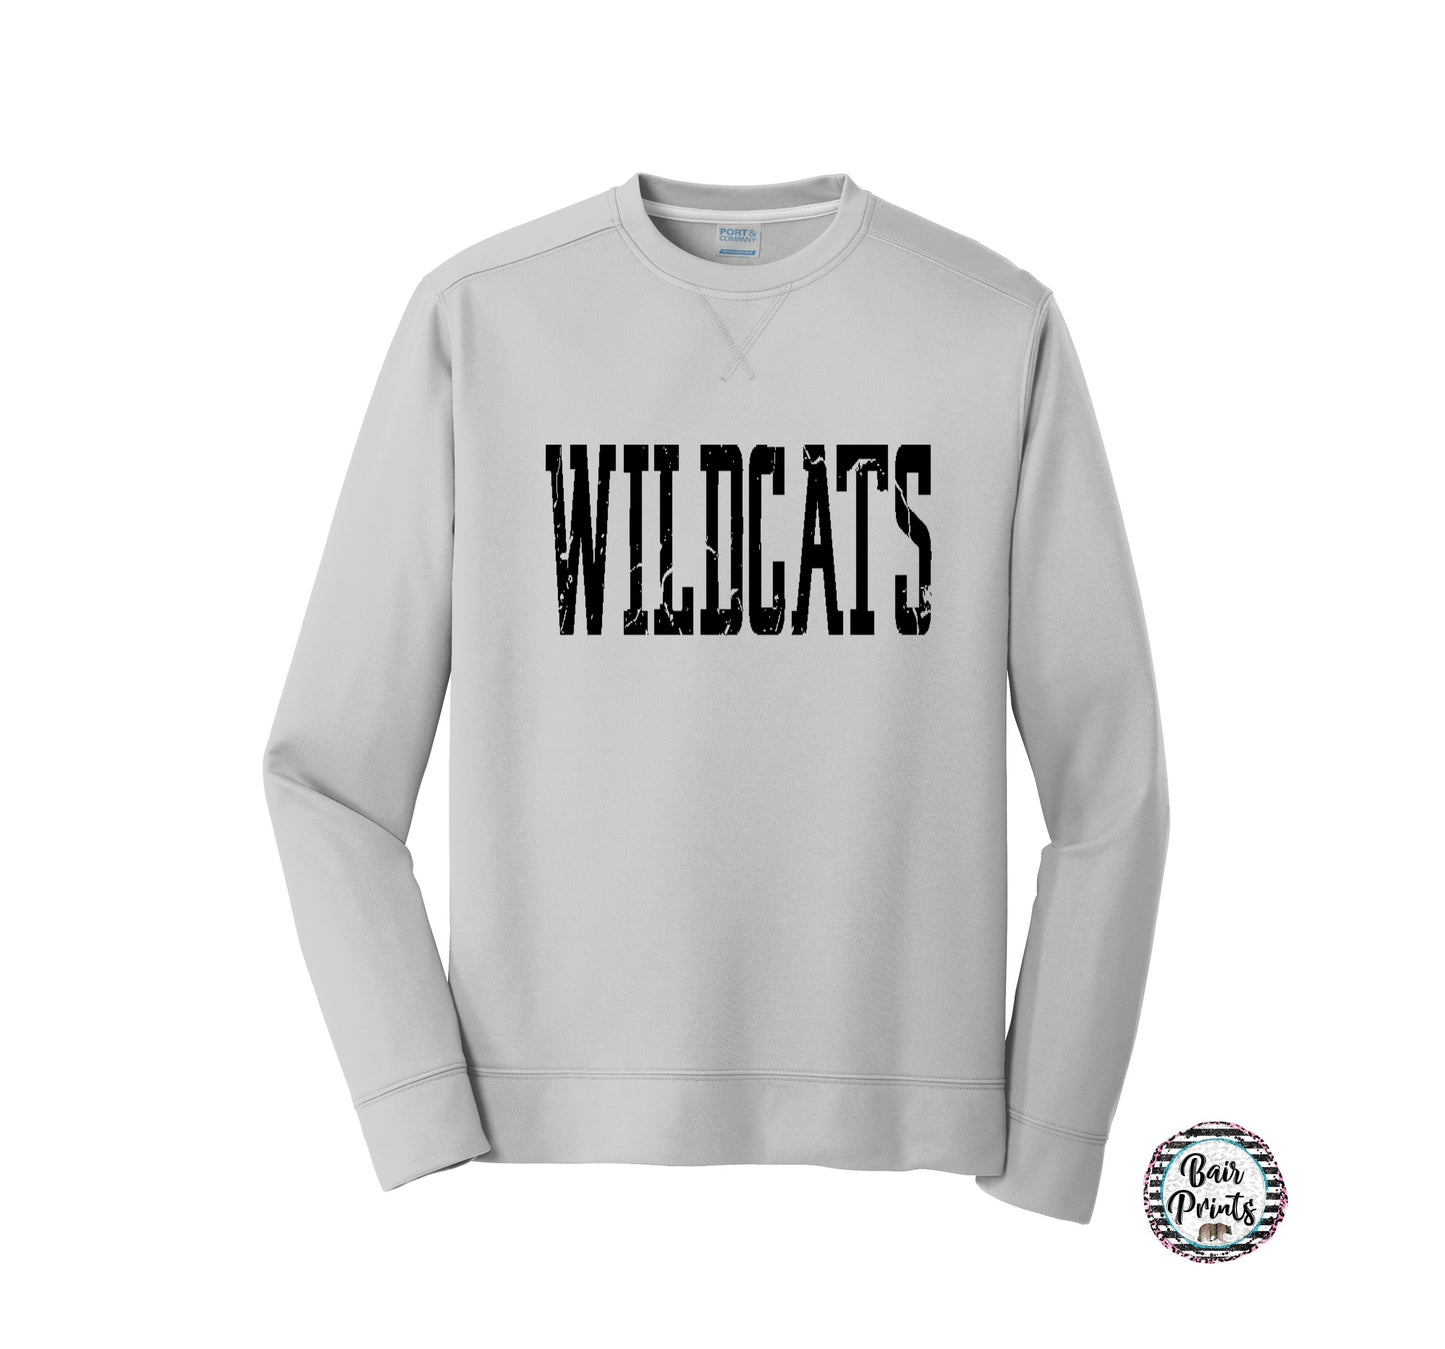 Wildcats Crewneck Sweatshirt. Wildcat Football